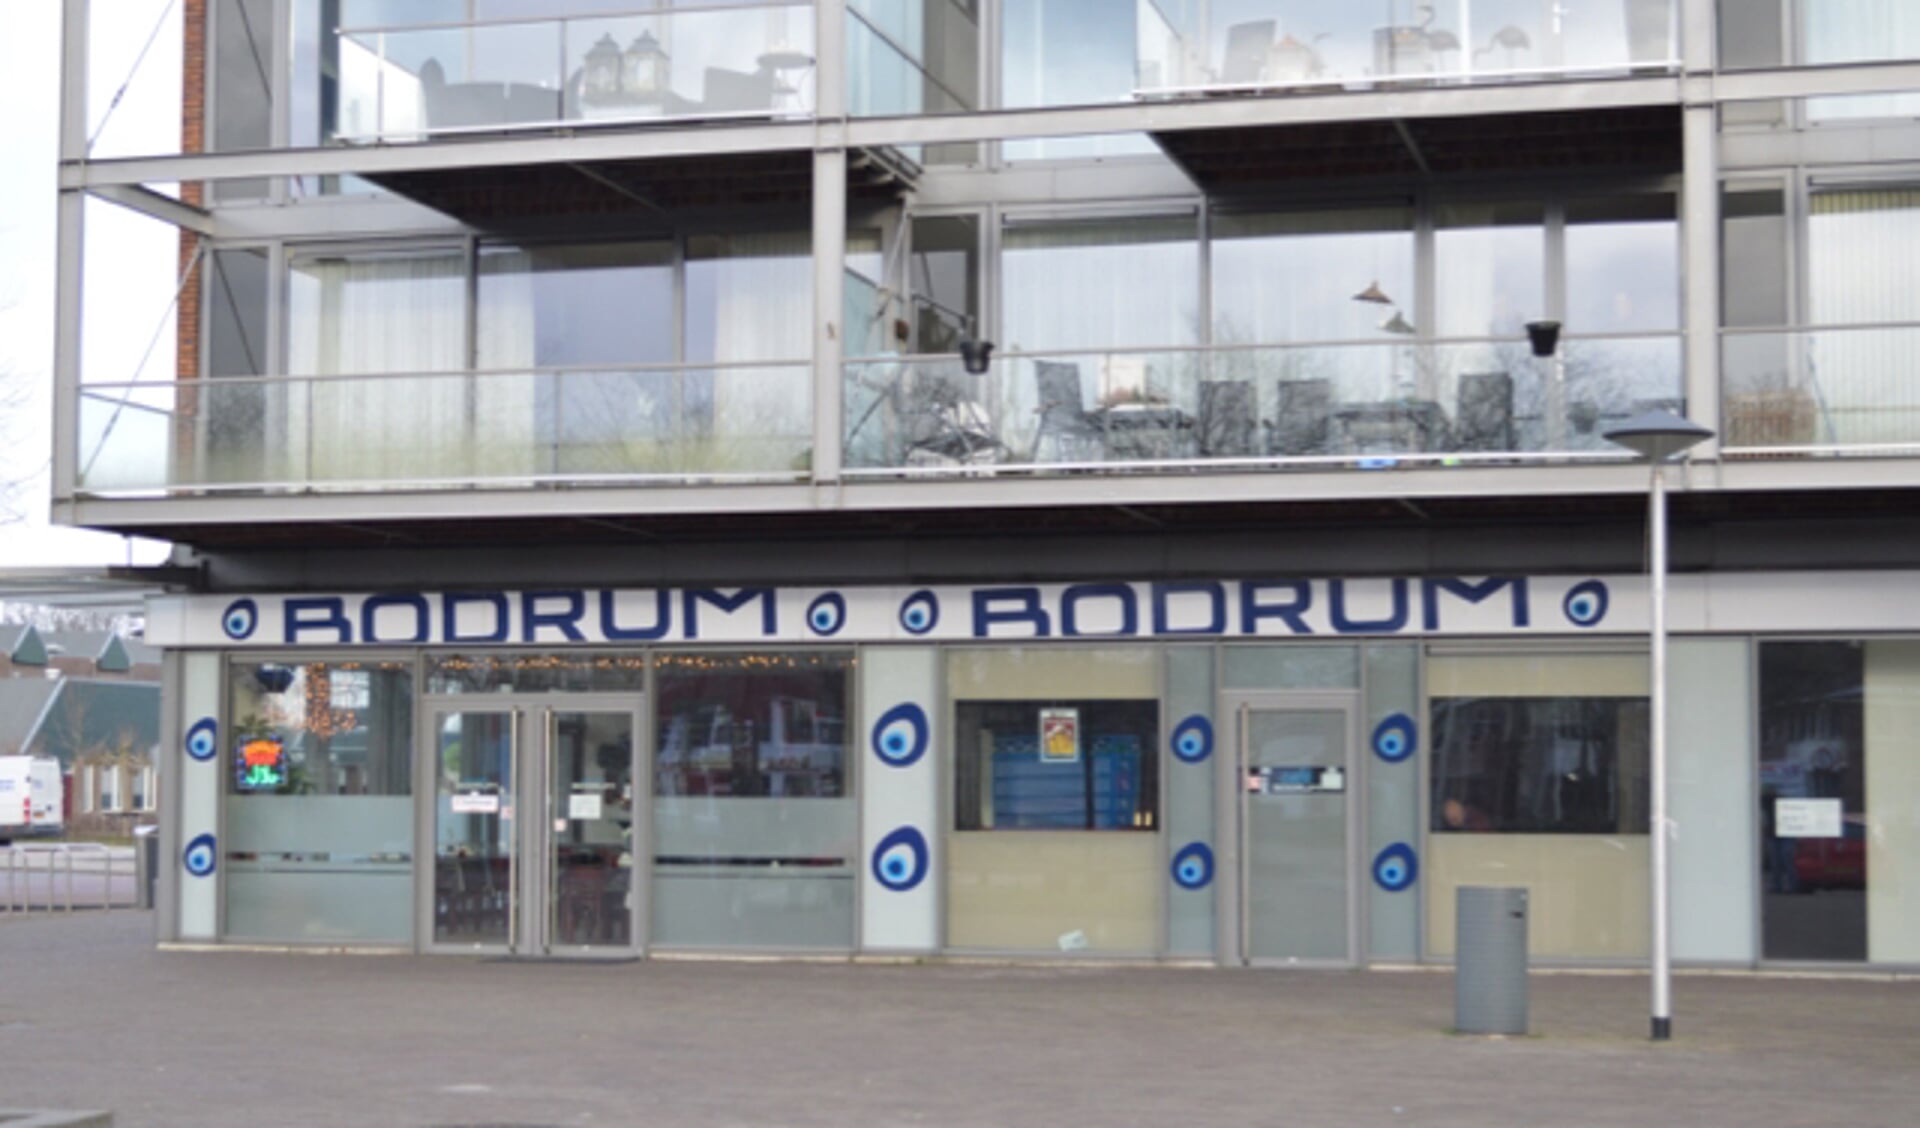  Restaurant Bodrum.